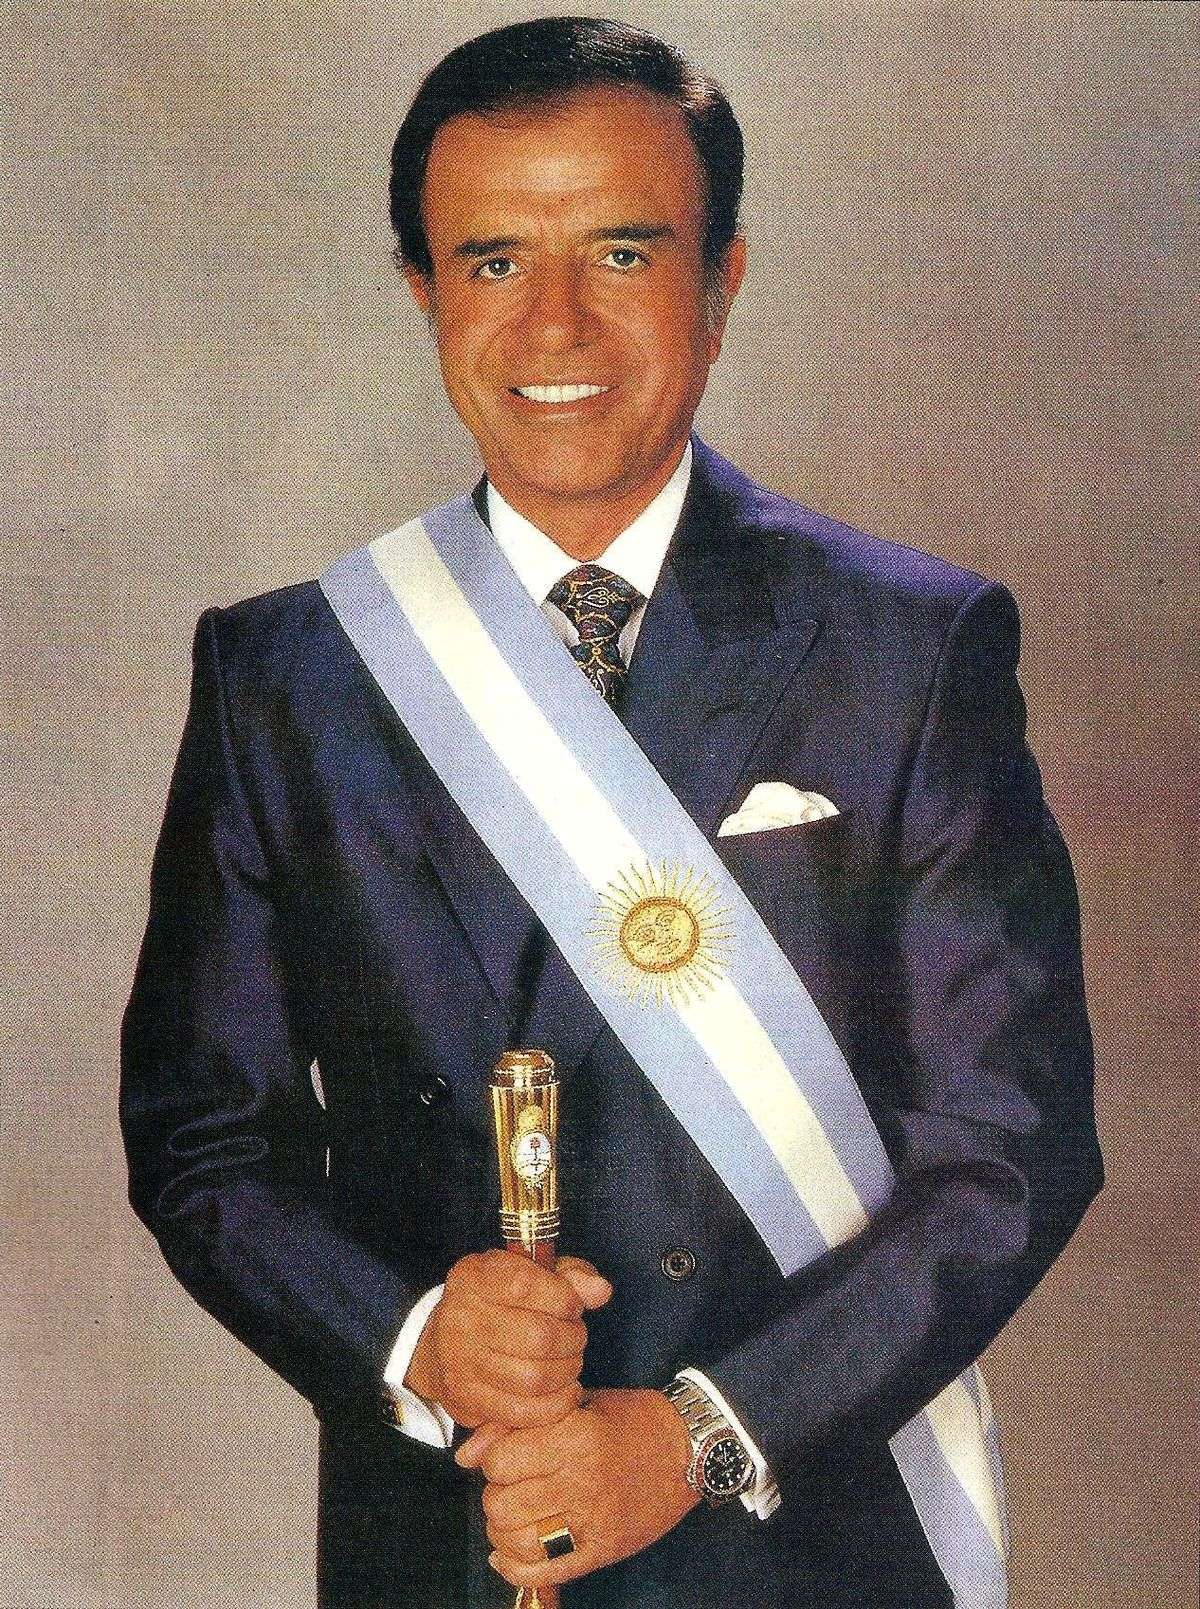 Ex-presidente da Argentina, Carlos Menem morre aos 90 anos